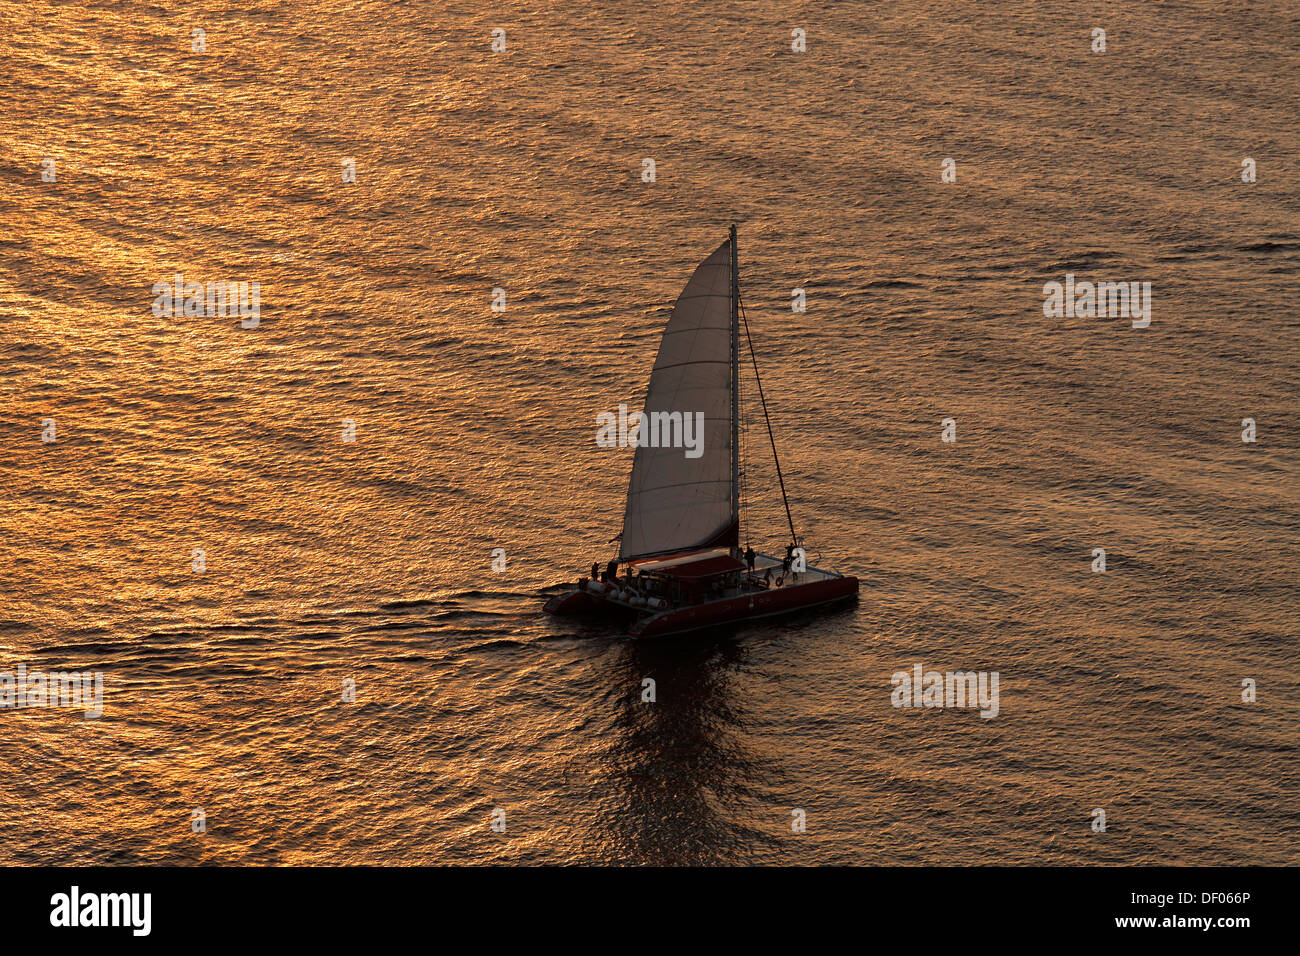 Catamarán en la luz de la tarde, oía, Santorin, Griechische Inseln, Alemania Foto de stock